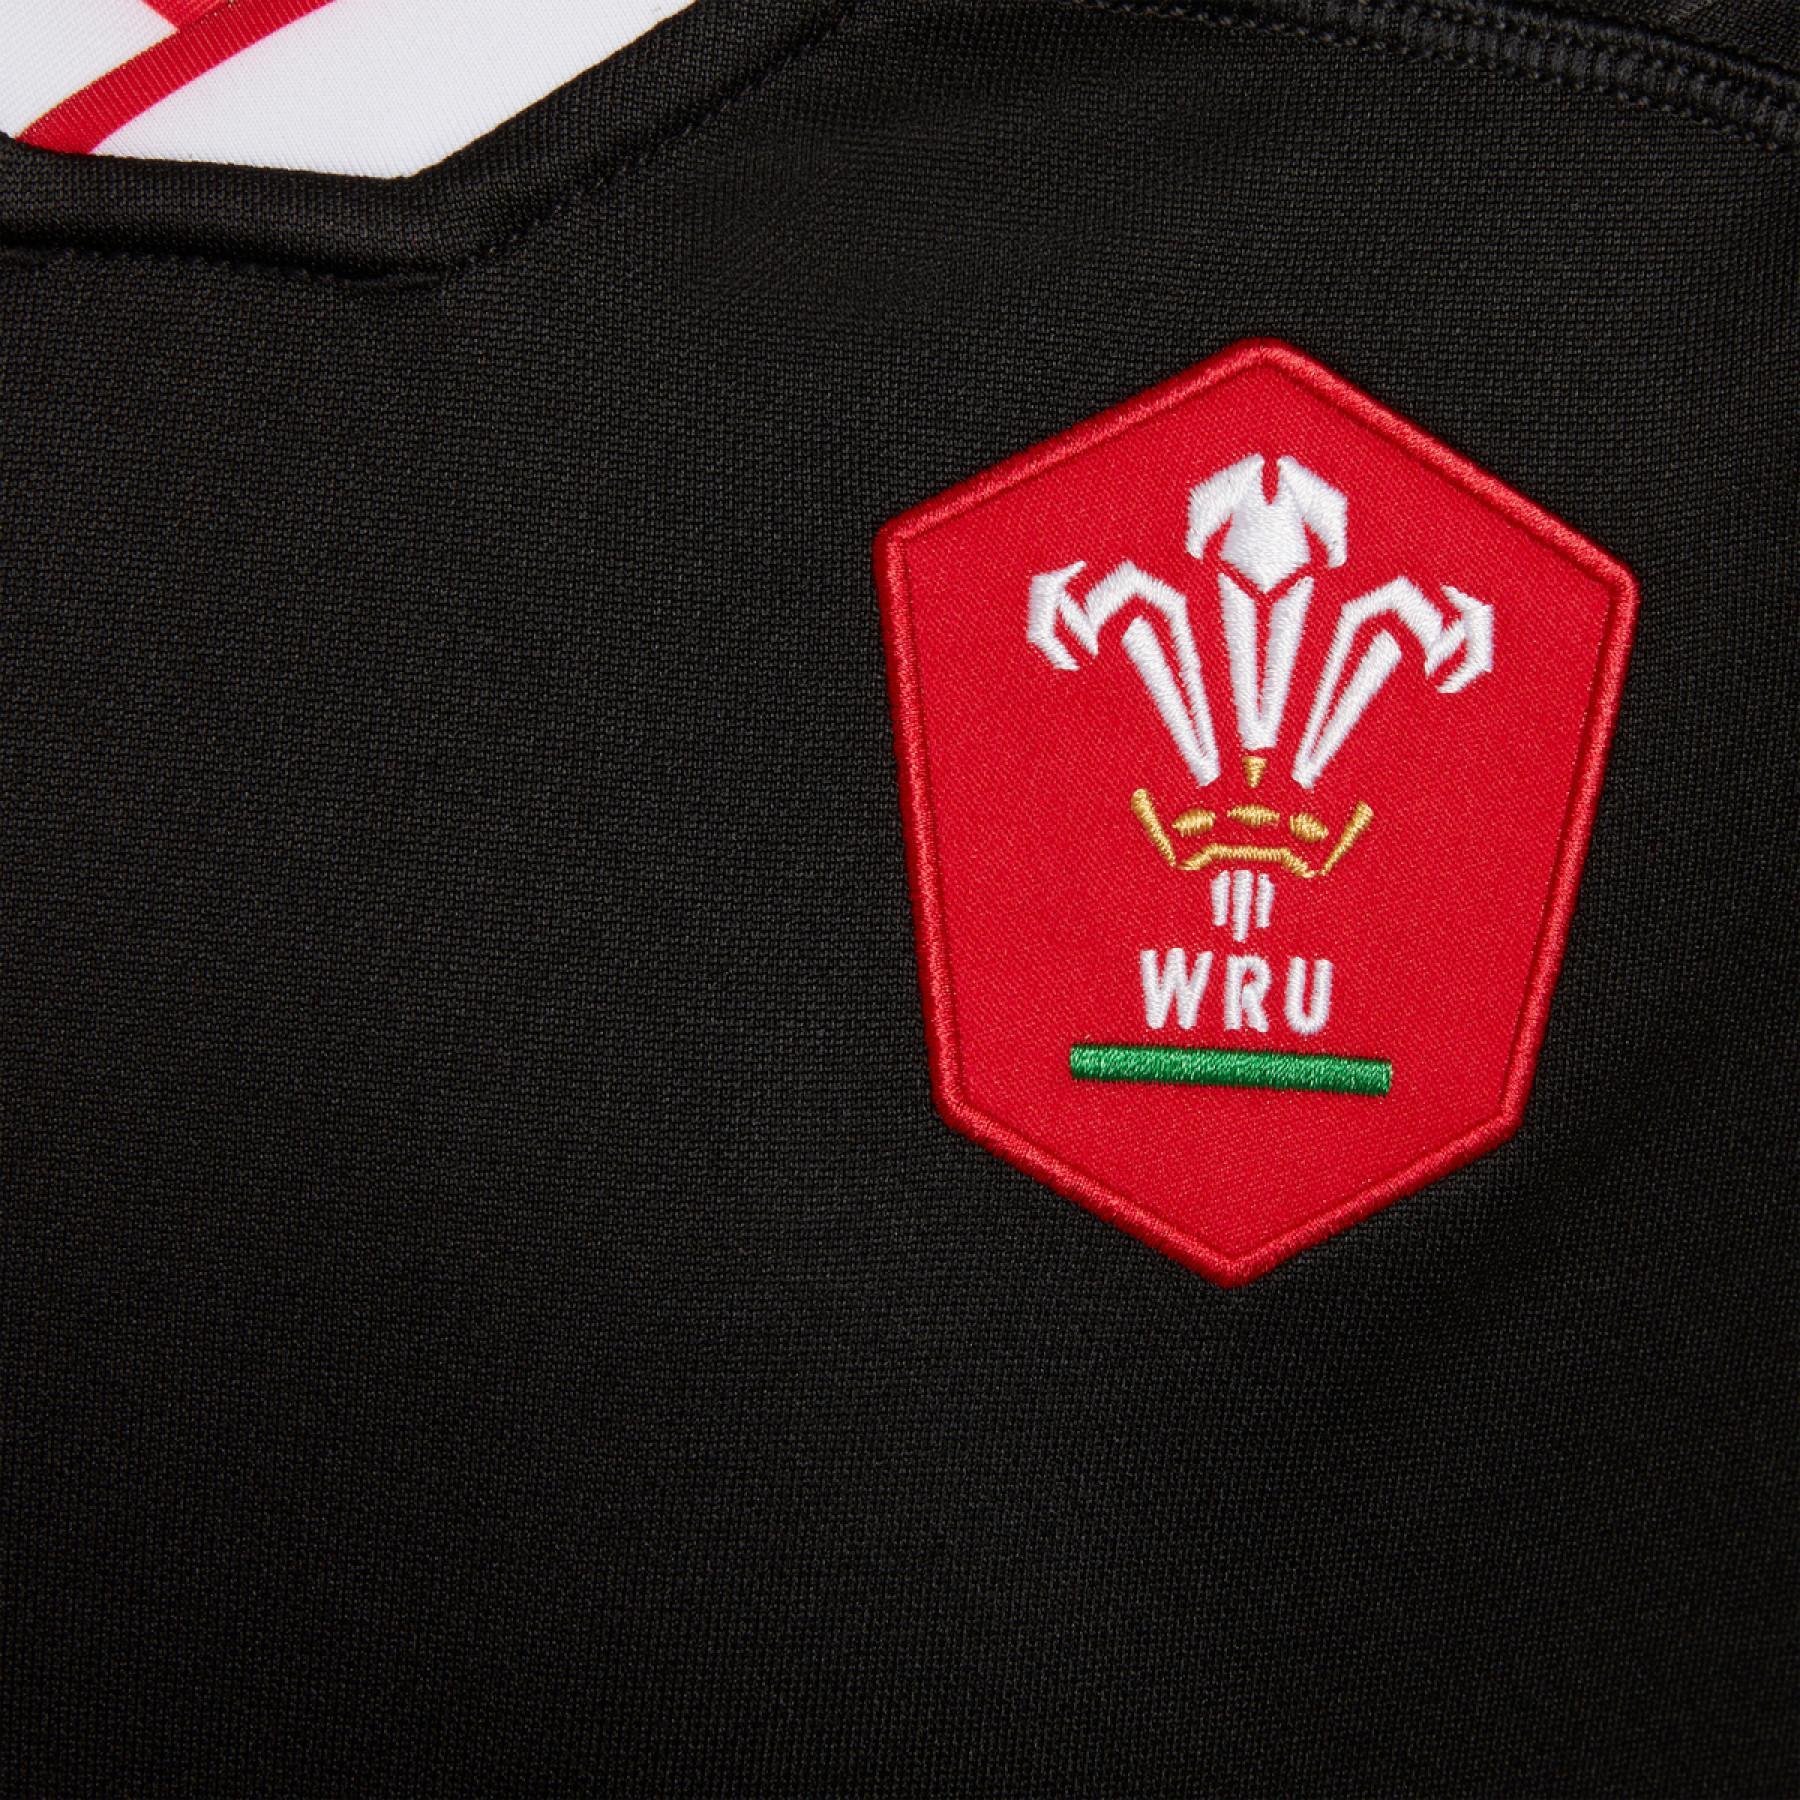 Maglia per bambini all'aperto Pays de Galles rugby 2020/21